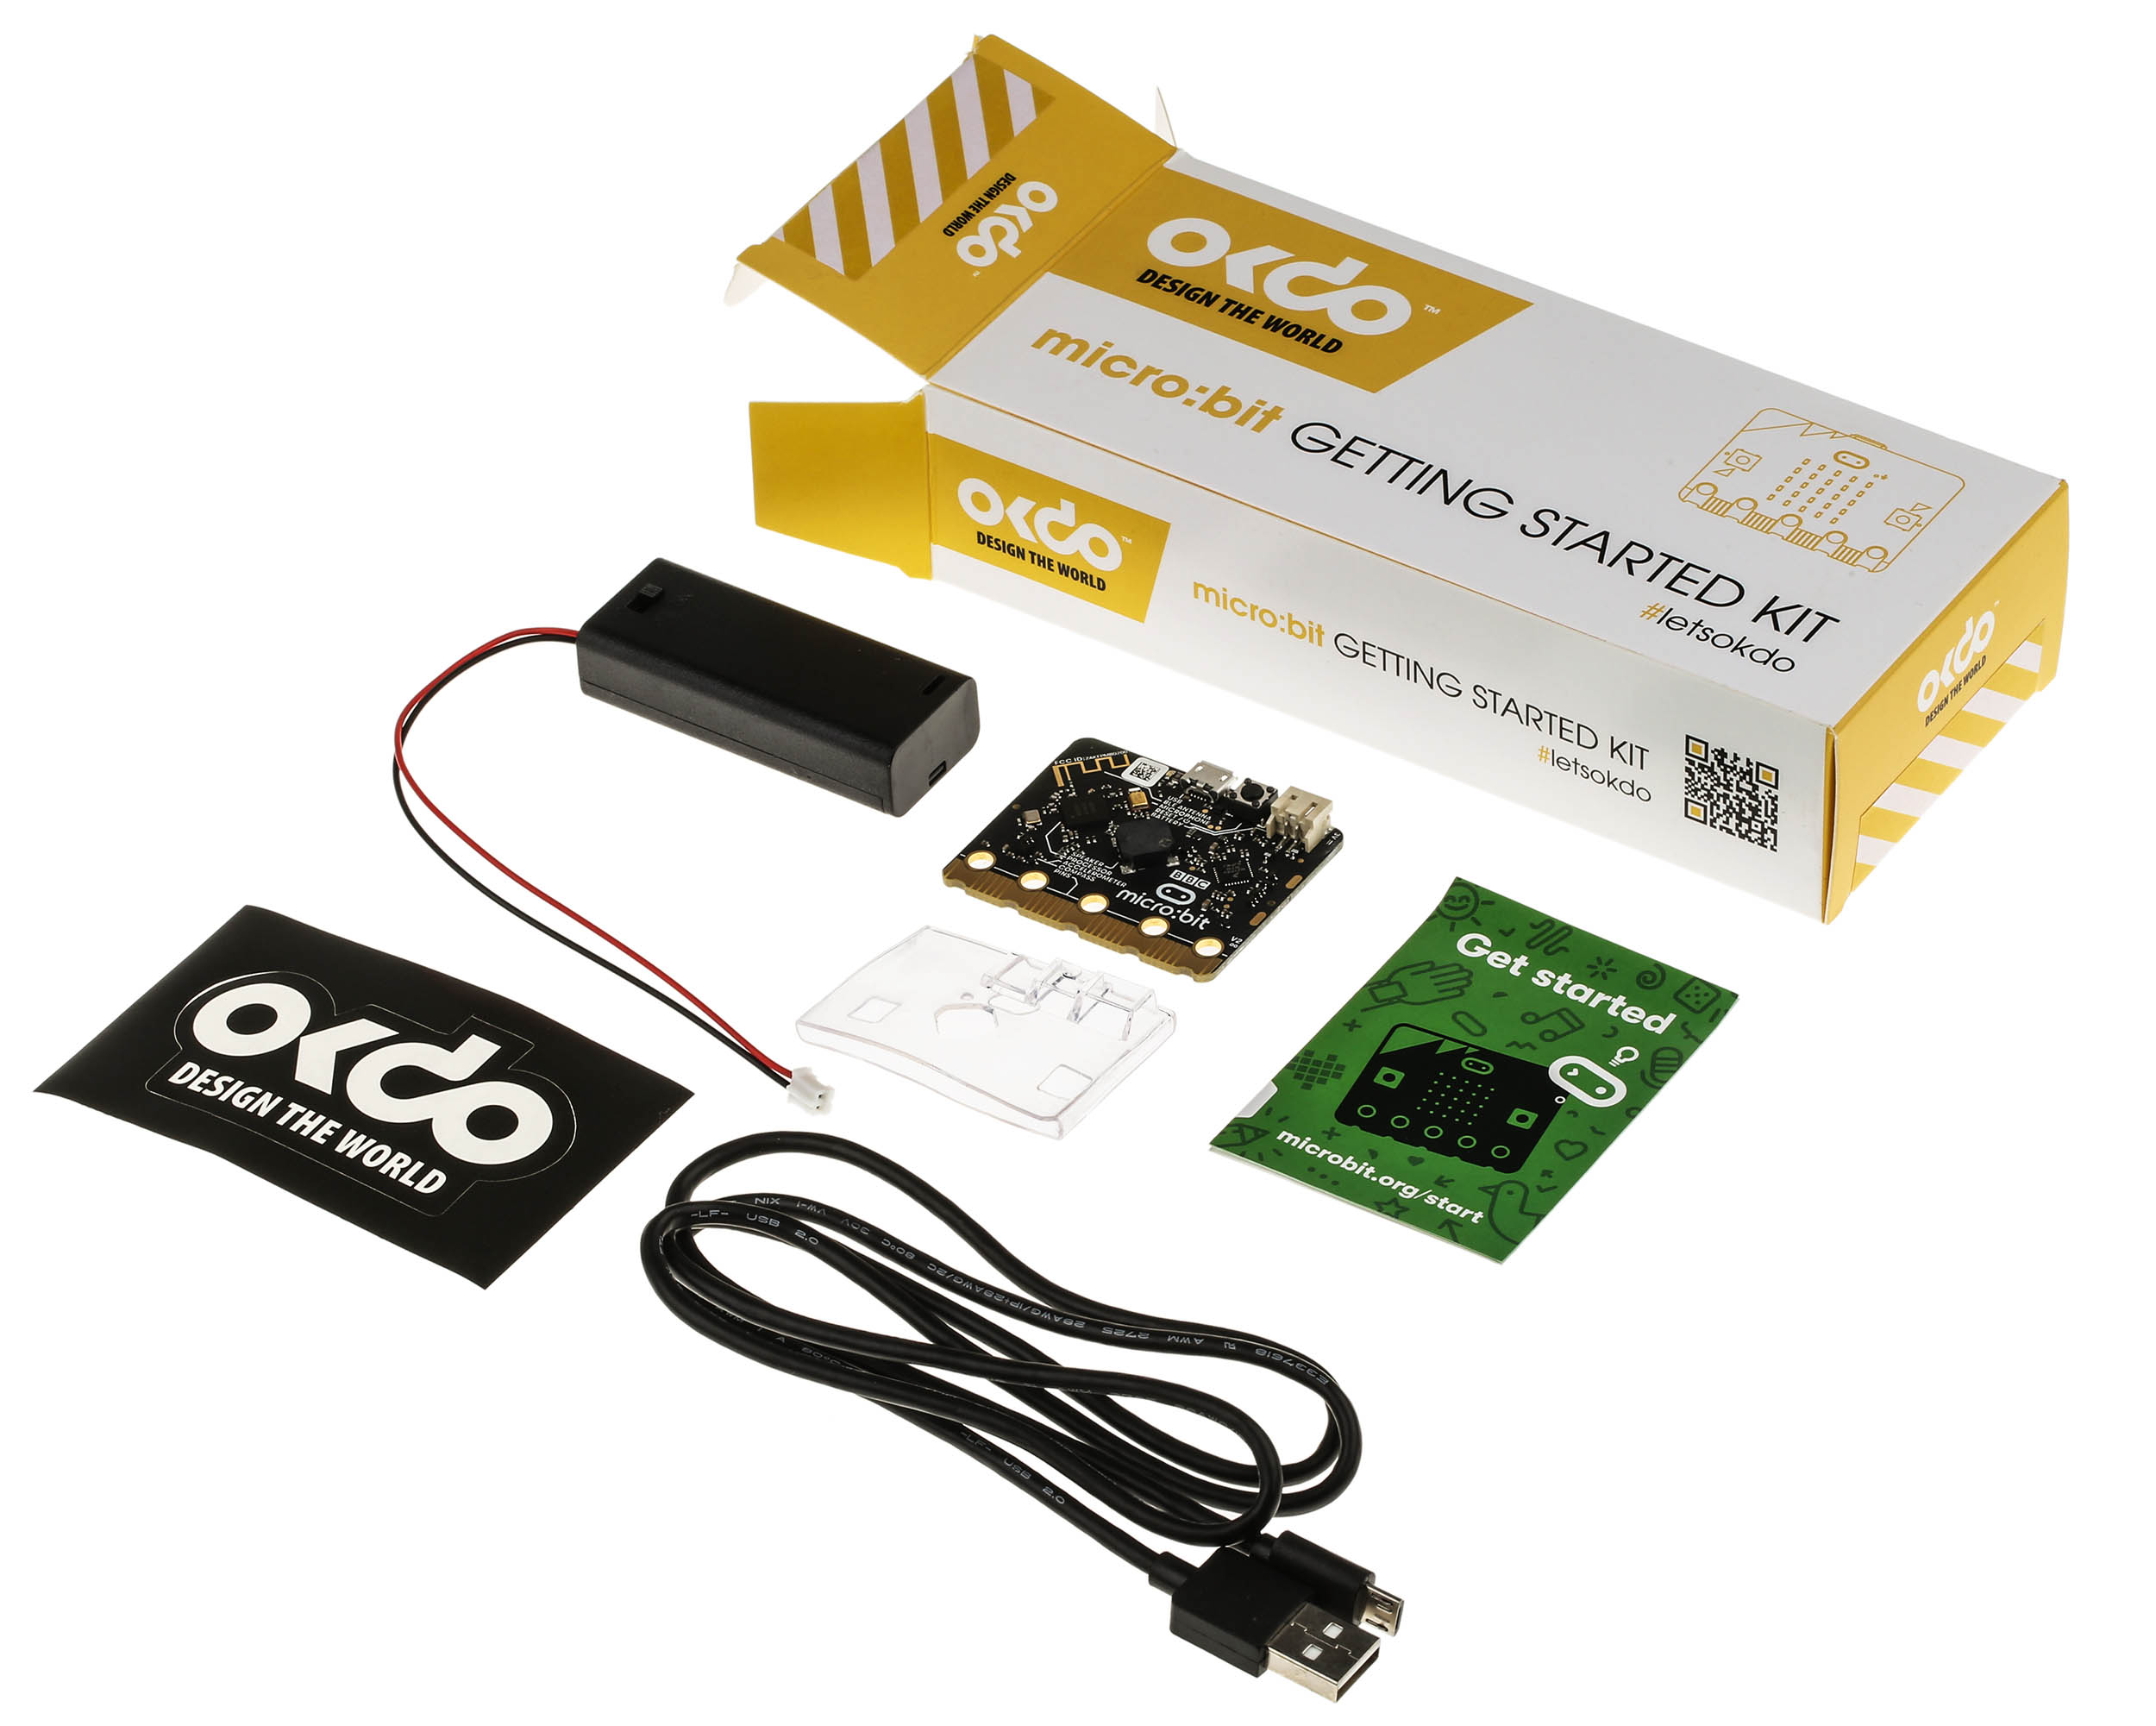 OKdo micro:bit Getting Started Kit (EN) - OKdo